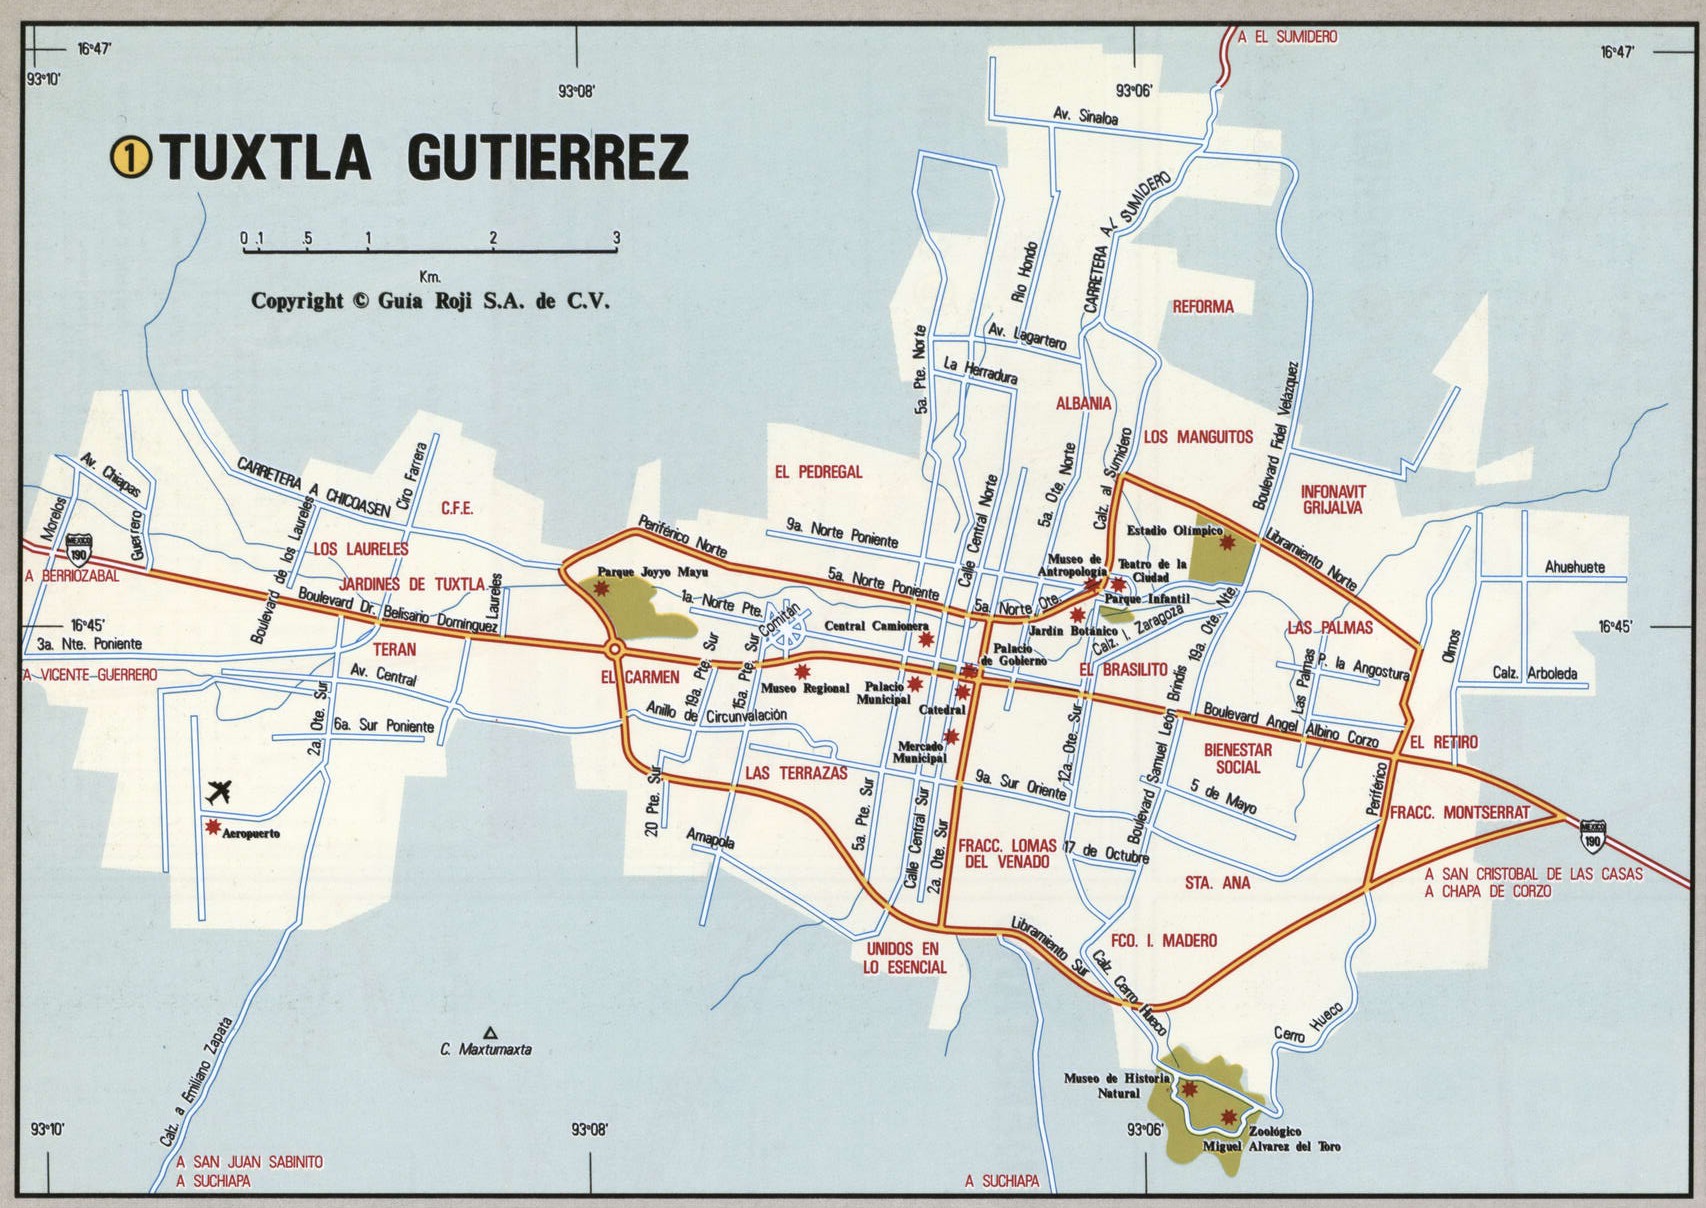 Tuxtla Gutierrez city map